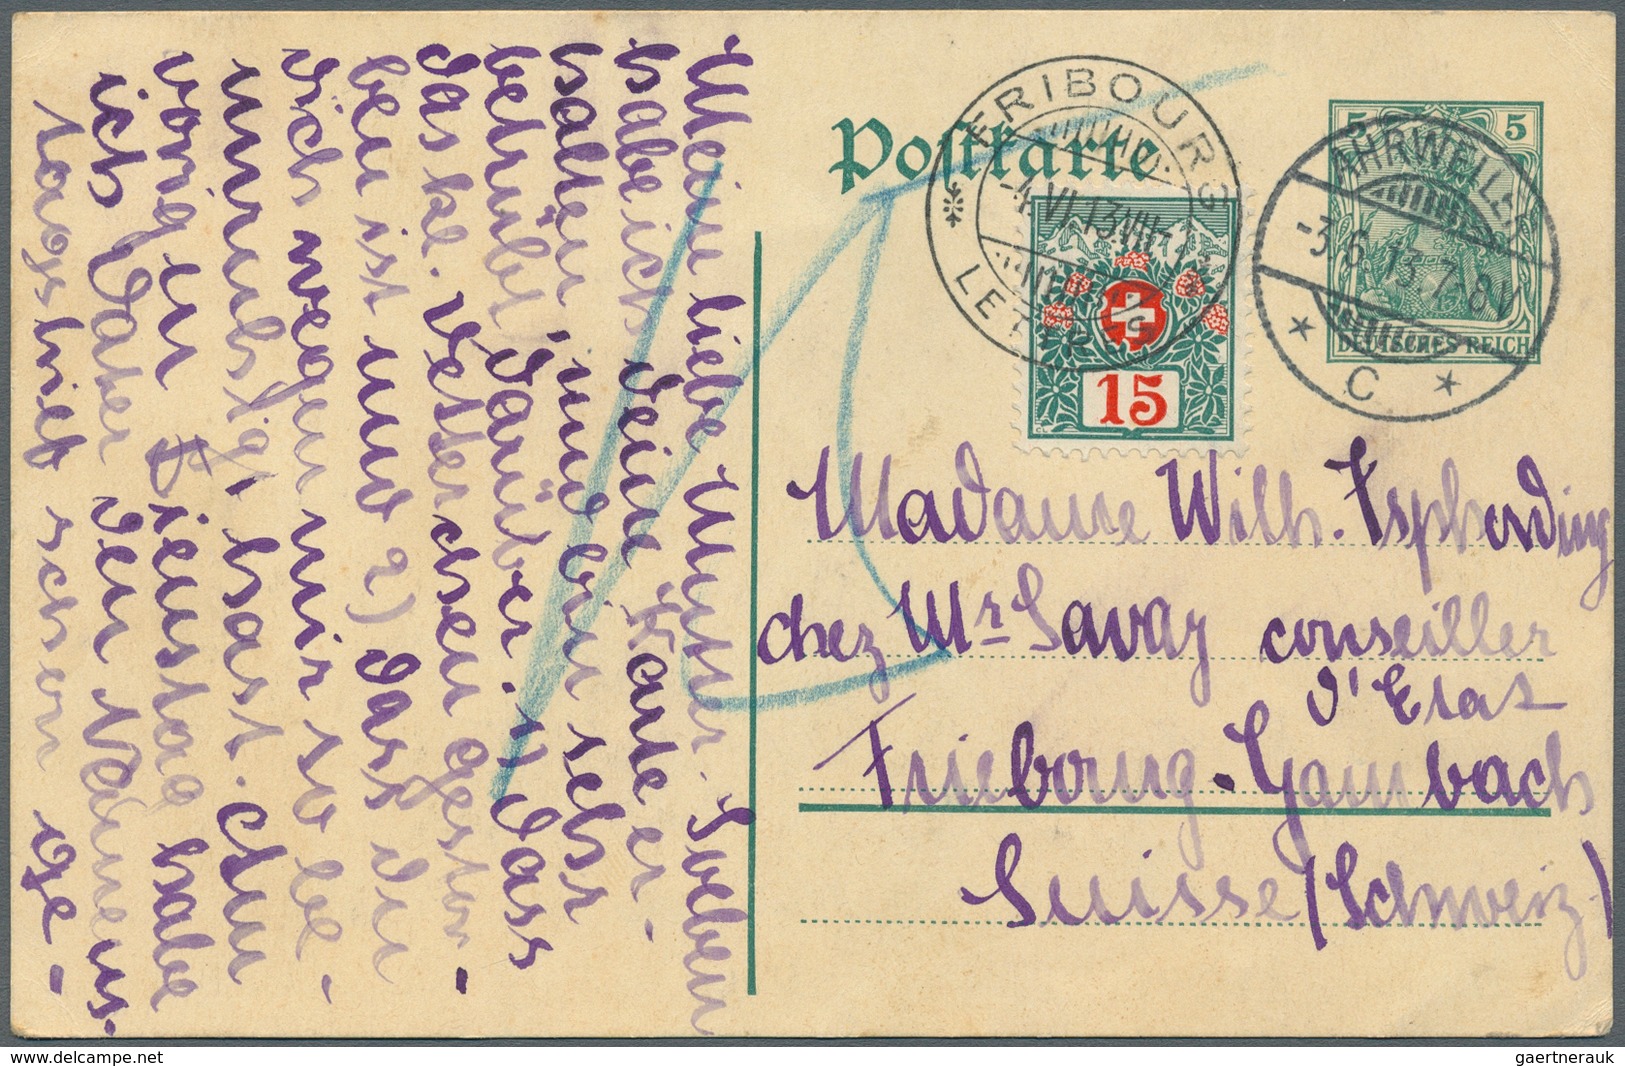 31445 Deutsches Reich: 1874/1921, vielseitige Partie von ca. 115 Briefen, Karten und Ganzsachen, teils Bed